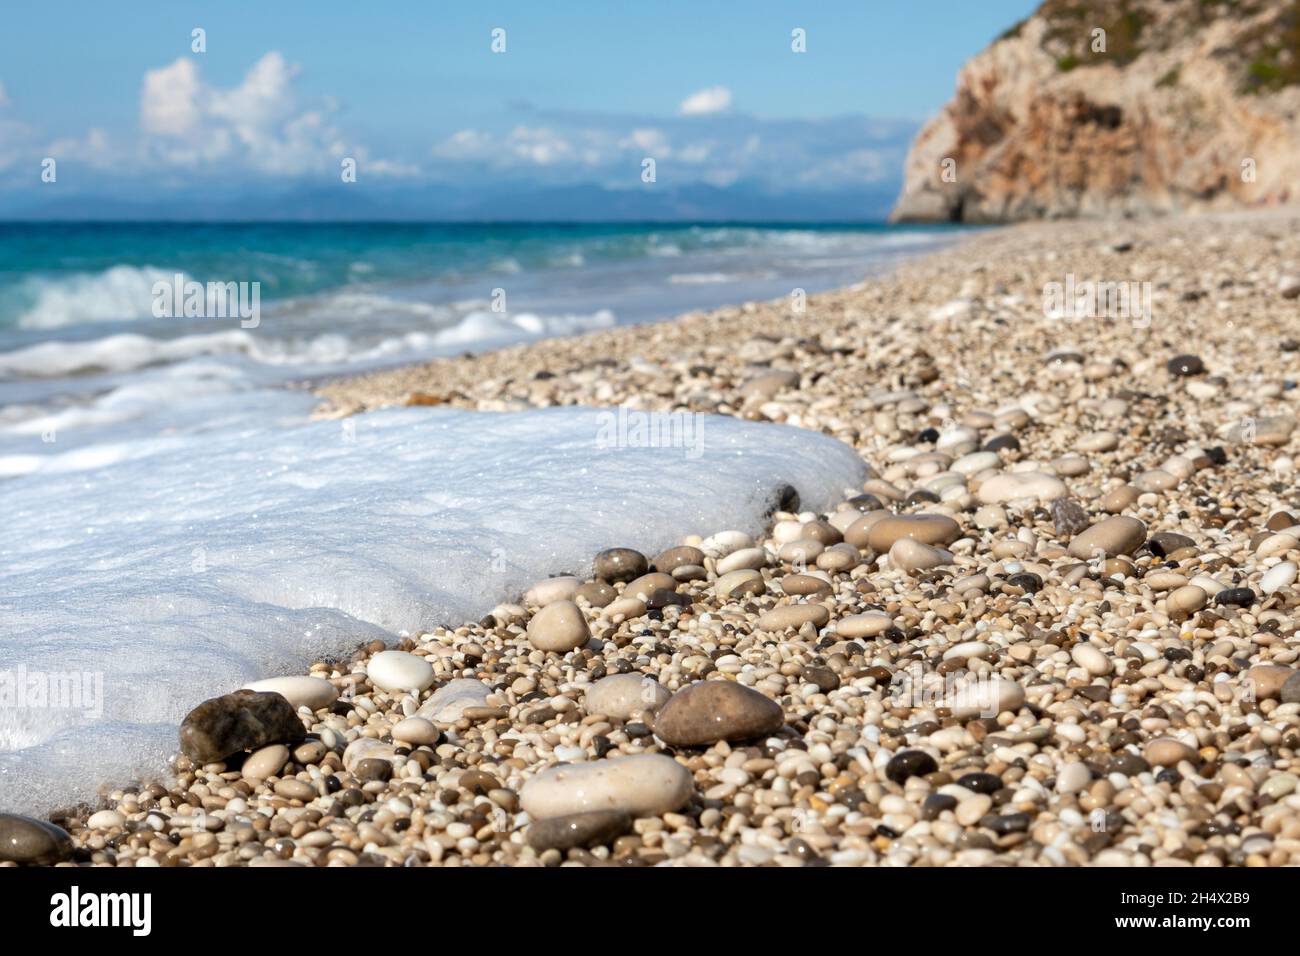 Weißer Schaum auf nassen, glänzenden Kieselsteinen aus nächster Nähe mit azurblauem Meer, stürmischen Wellen, epischen Wolken und felsigen Klippen. Mylos Strand an der Küste der Insel Lefkada in Gr Stockfoto